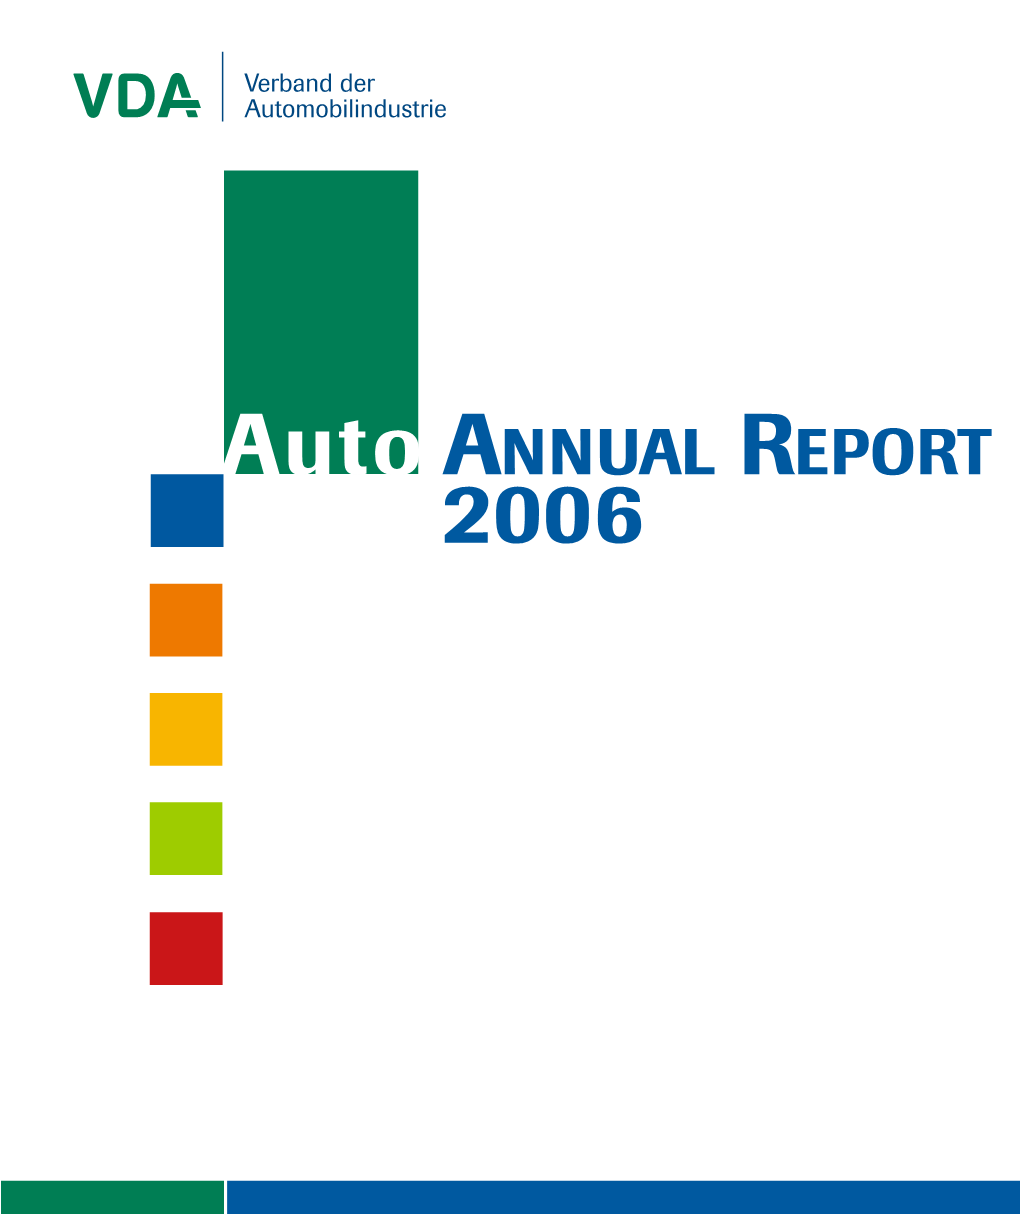 Auto ANNUAL REPORT 2006